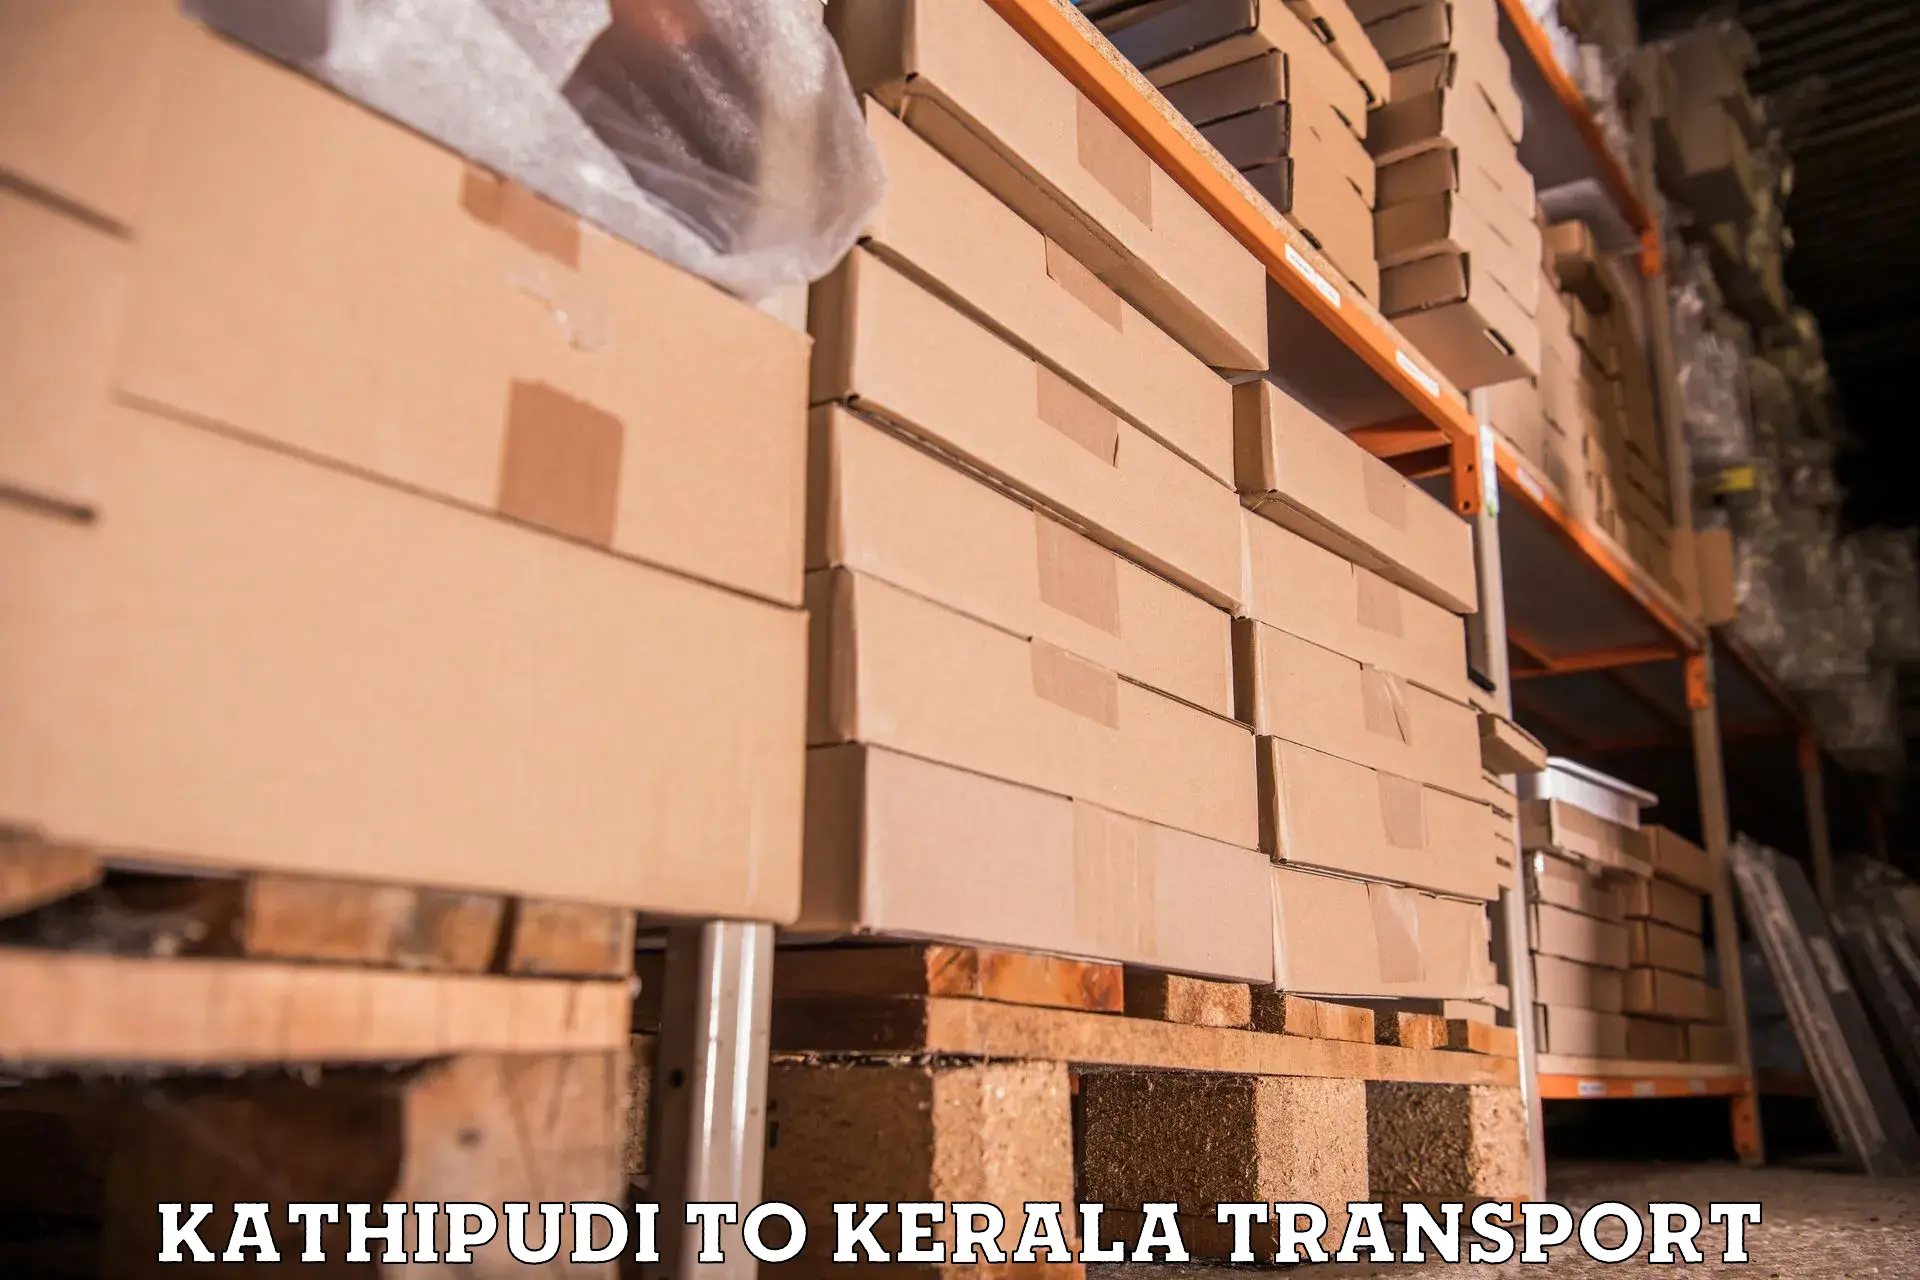 Transport in sharing Kathipudi to Kodungallur